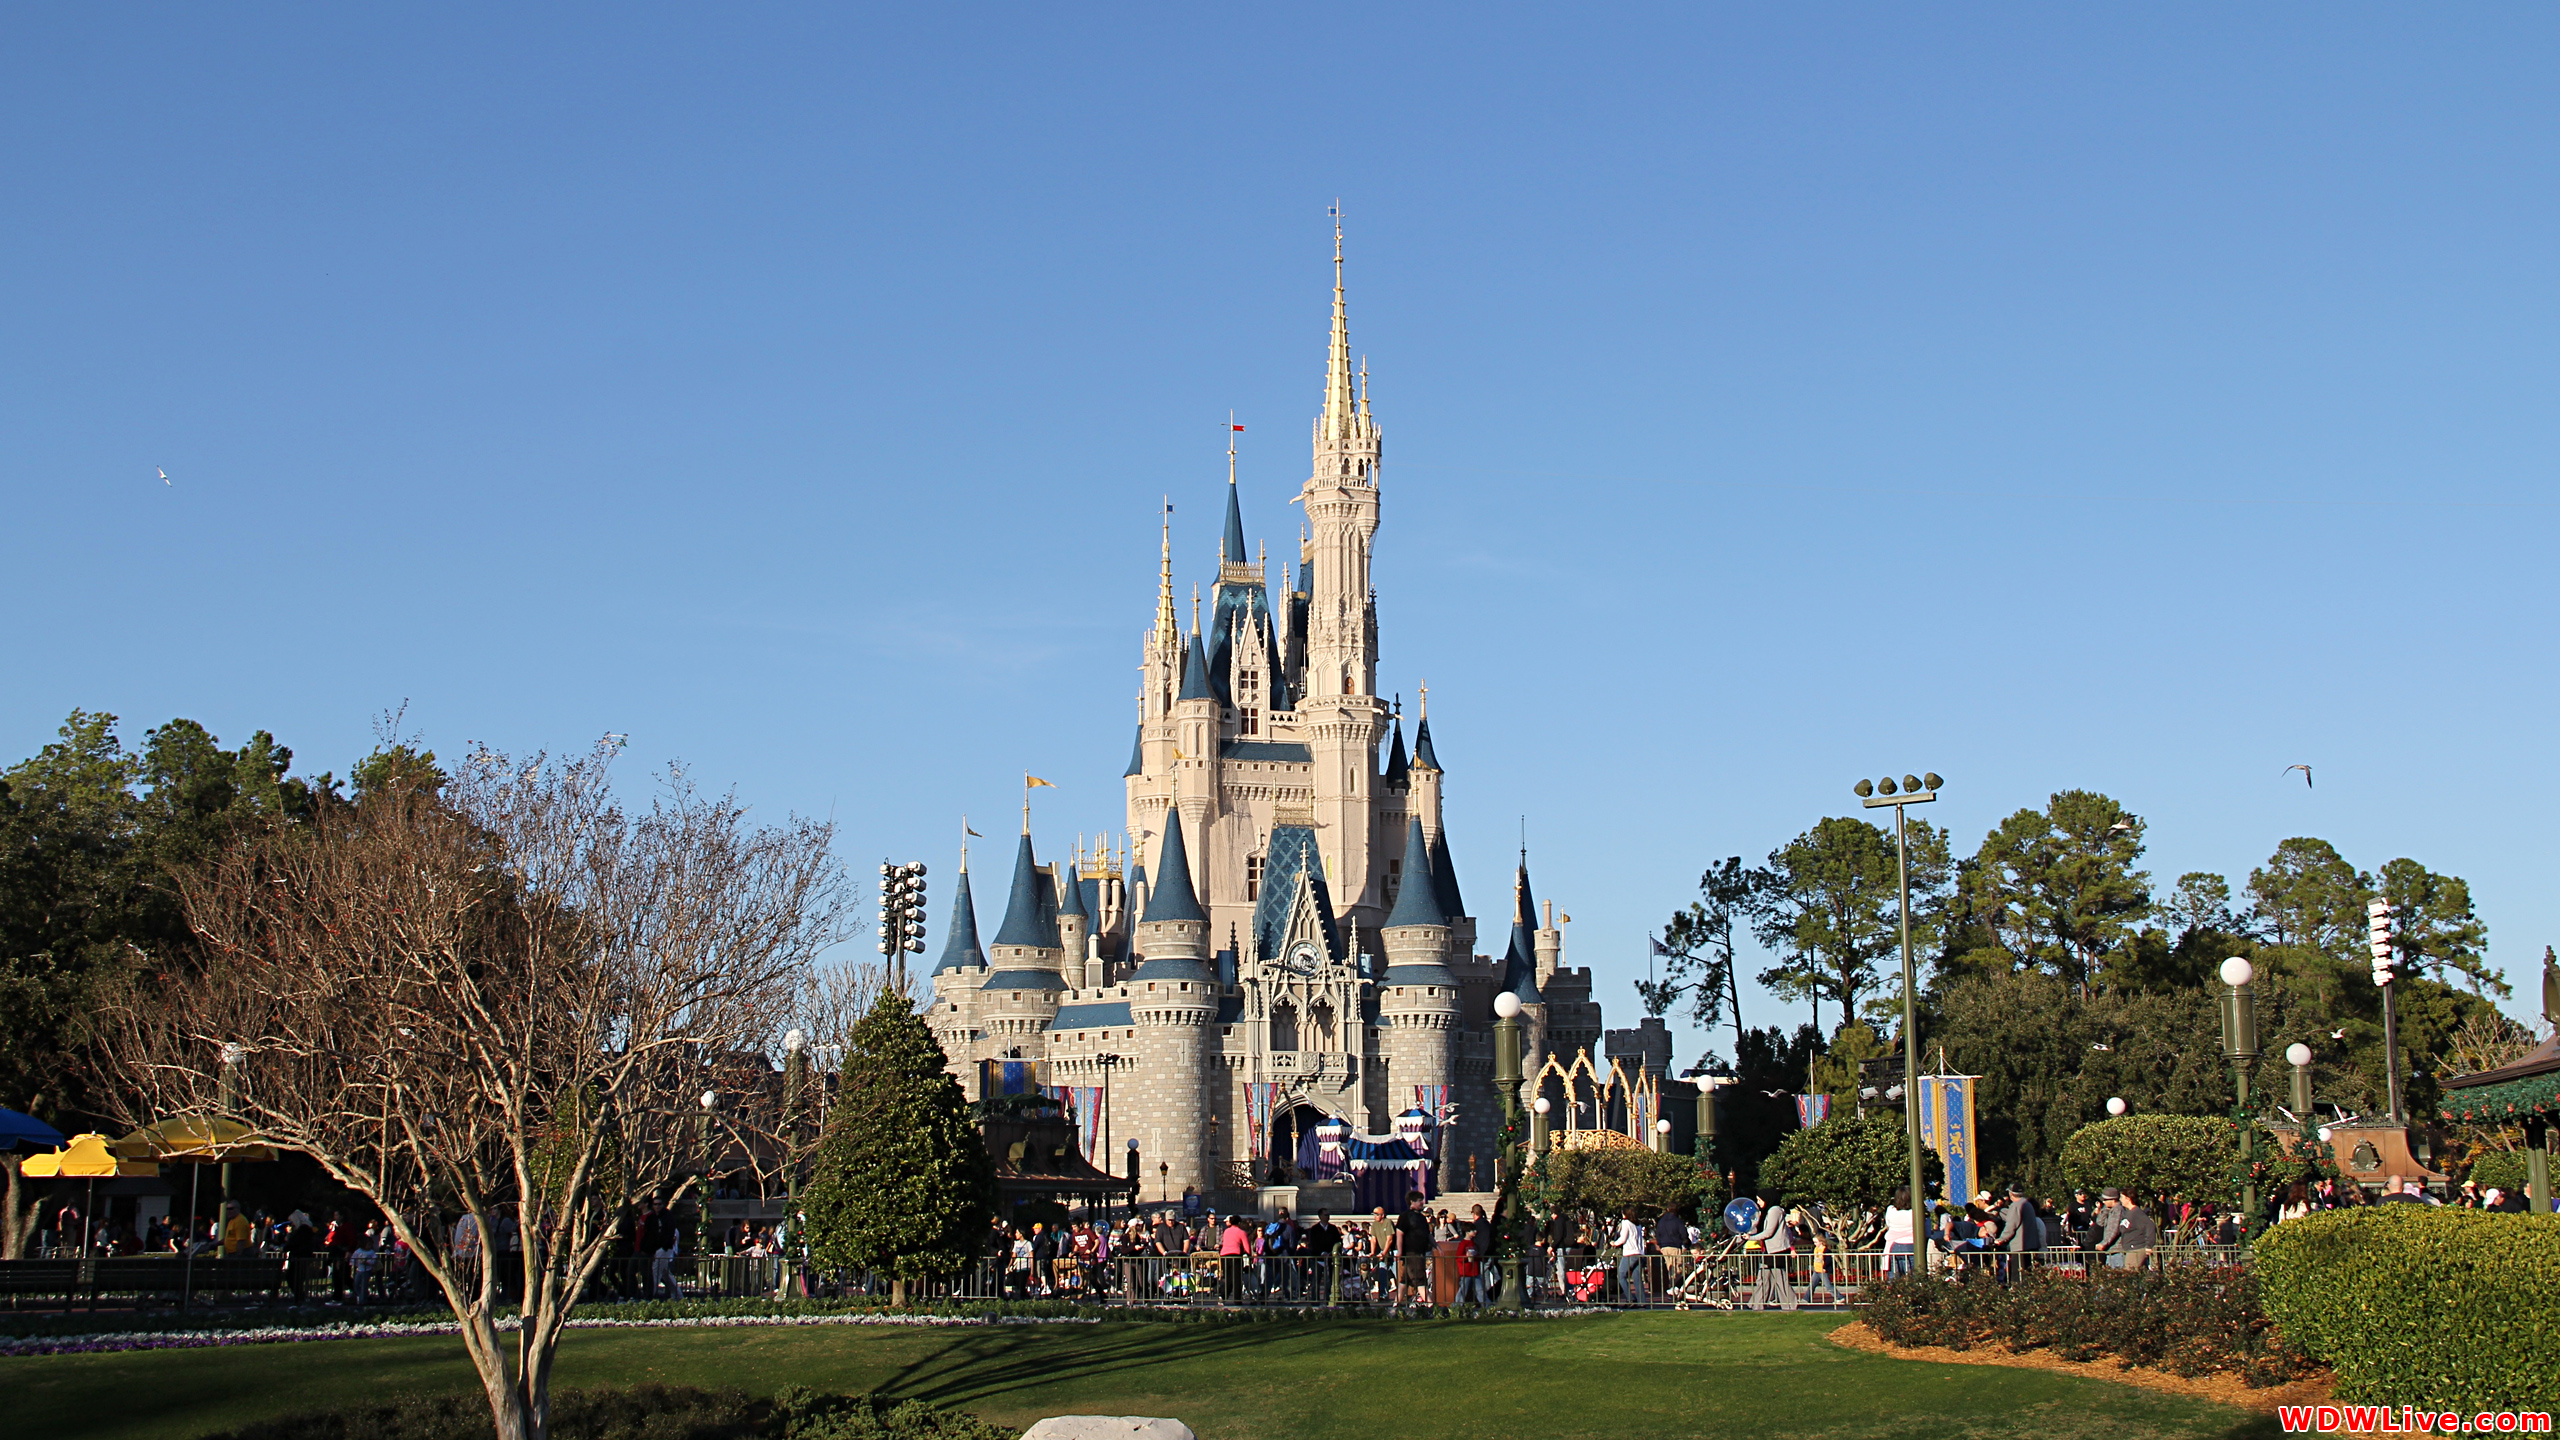 Cinderella Castle: